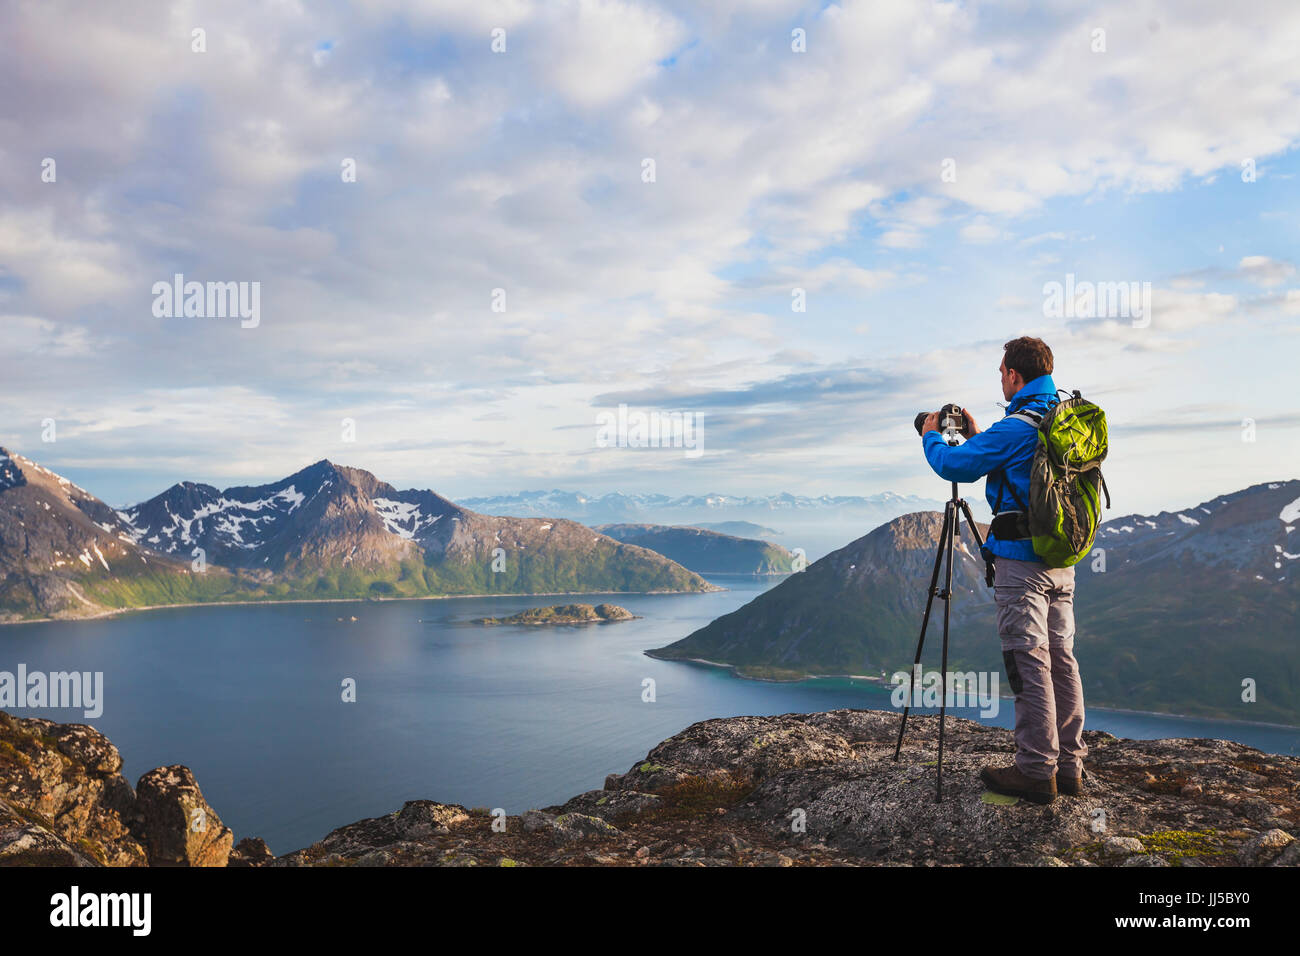 Fotografo di paesaggio lavora con treppiede e fotocamera reflex digitale in una bellissima natura selvaggia, in piedi con zaino sulla cima della montagna Foto Stock